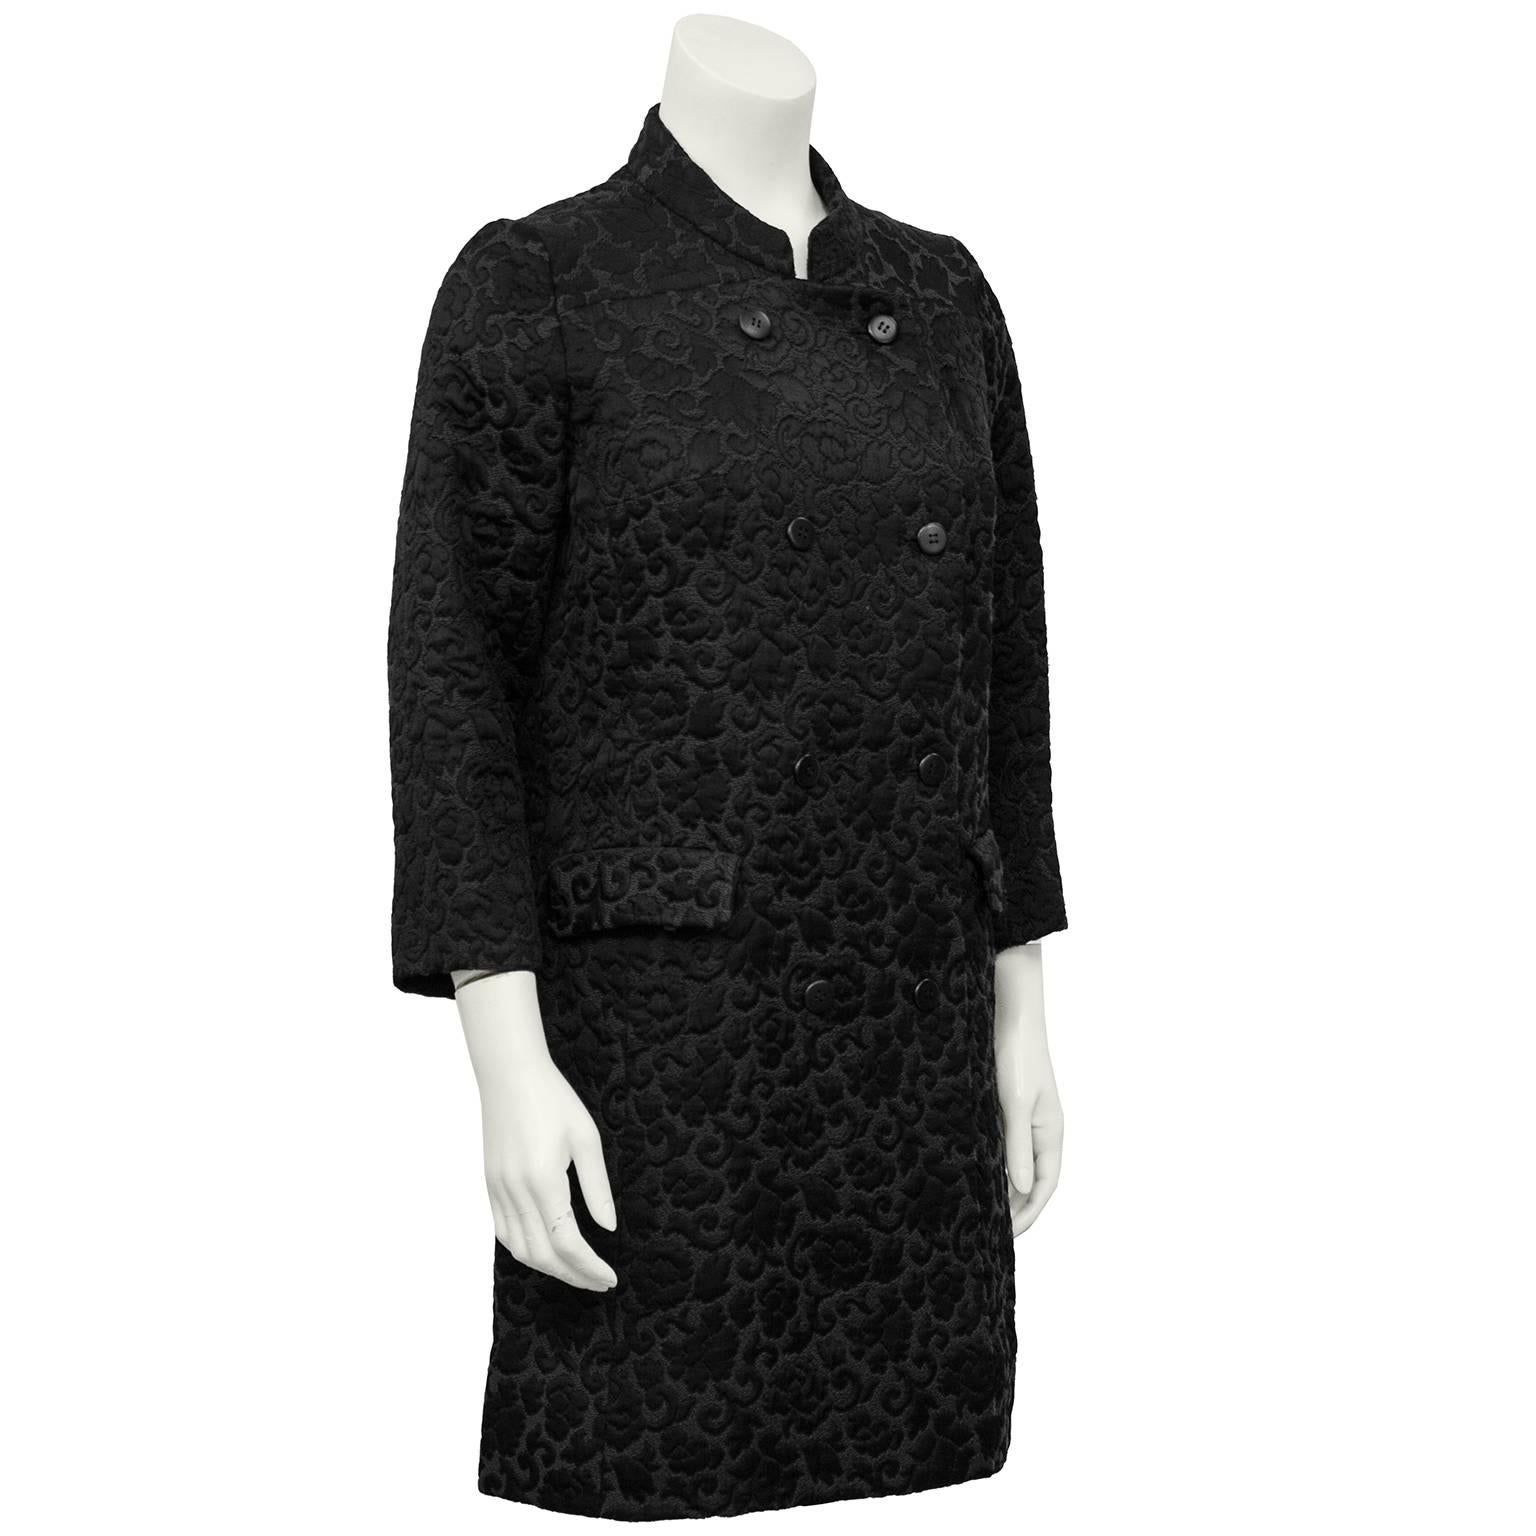 Magnifique manteau en brocart noir sur noir des années 1970 par Tiktiner. Col mandarin, manches 3/4 et poches à rabat. Ceinture à l'arrière. Le parfait manteau de transition saisonnière. Il est également facile de l'habiller comme un manteau de